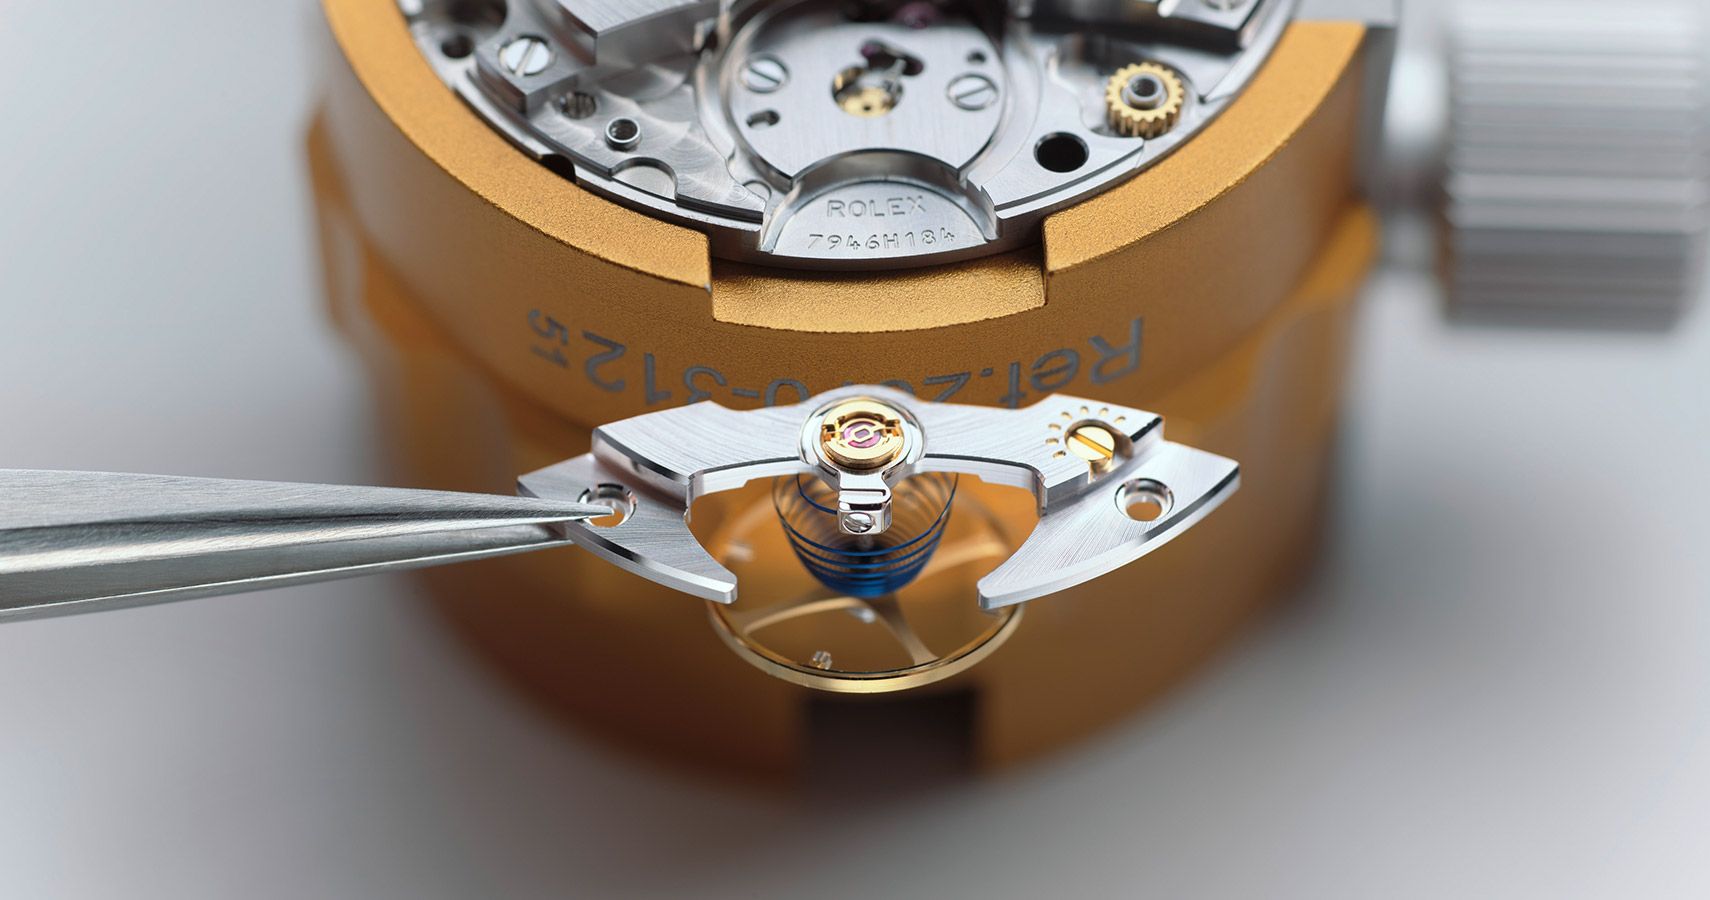 Les composants sont séchés puis le mouvement est intégralement remonté et lubrifié. 
L’horloger règle une première fois le mouvement selon les critères de la marque.
